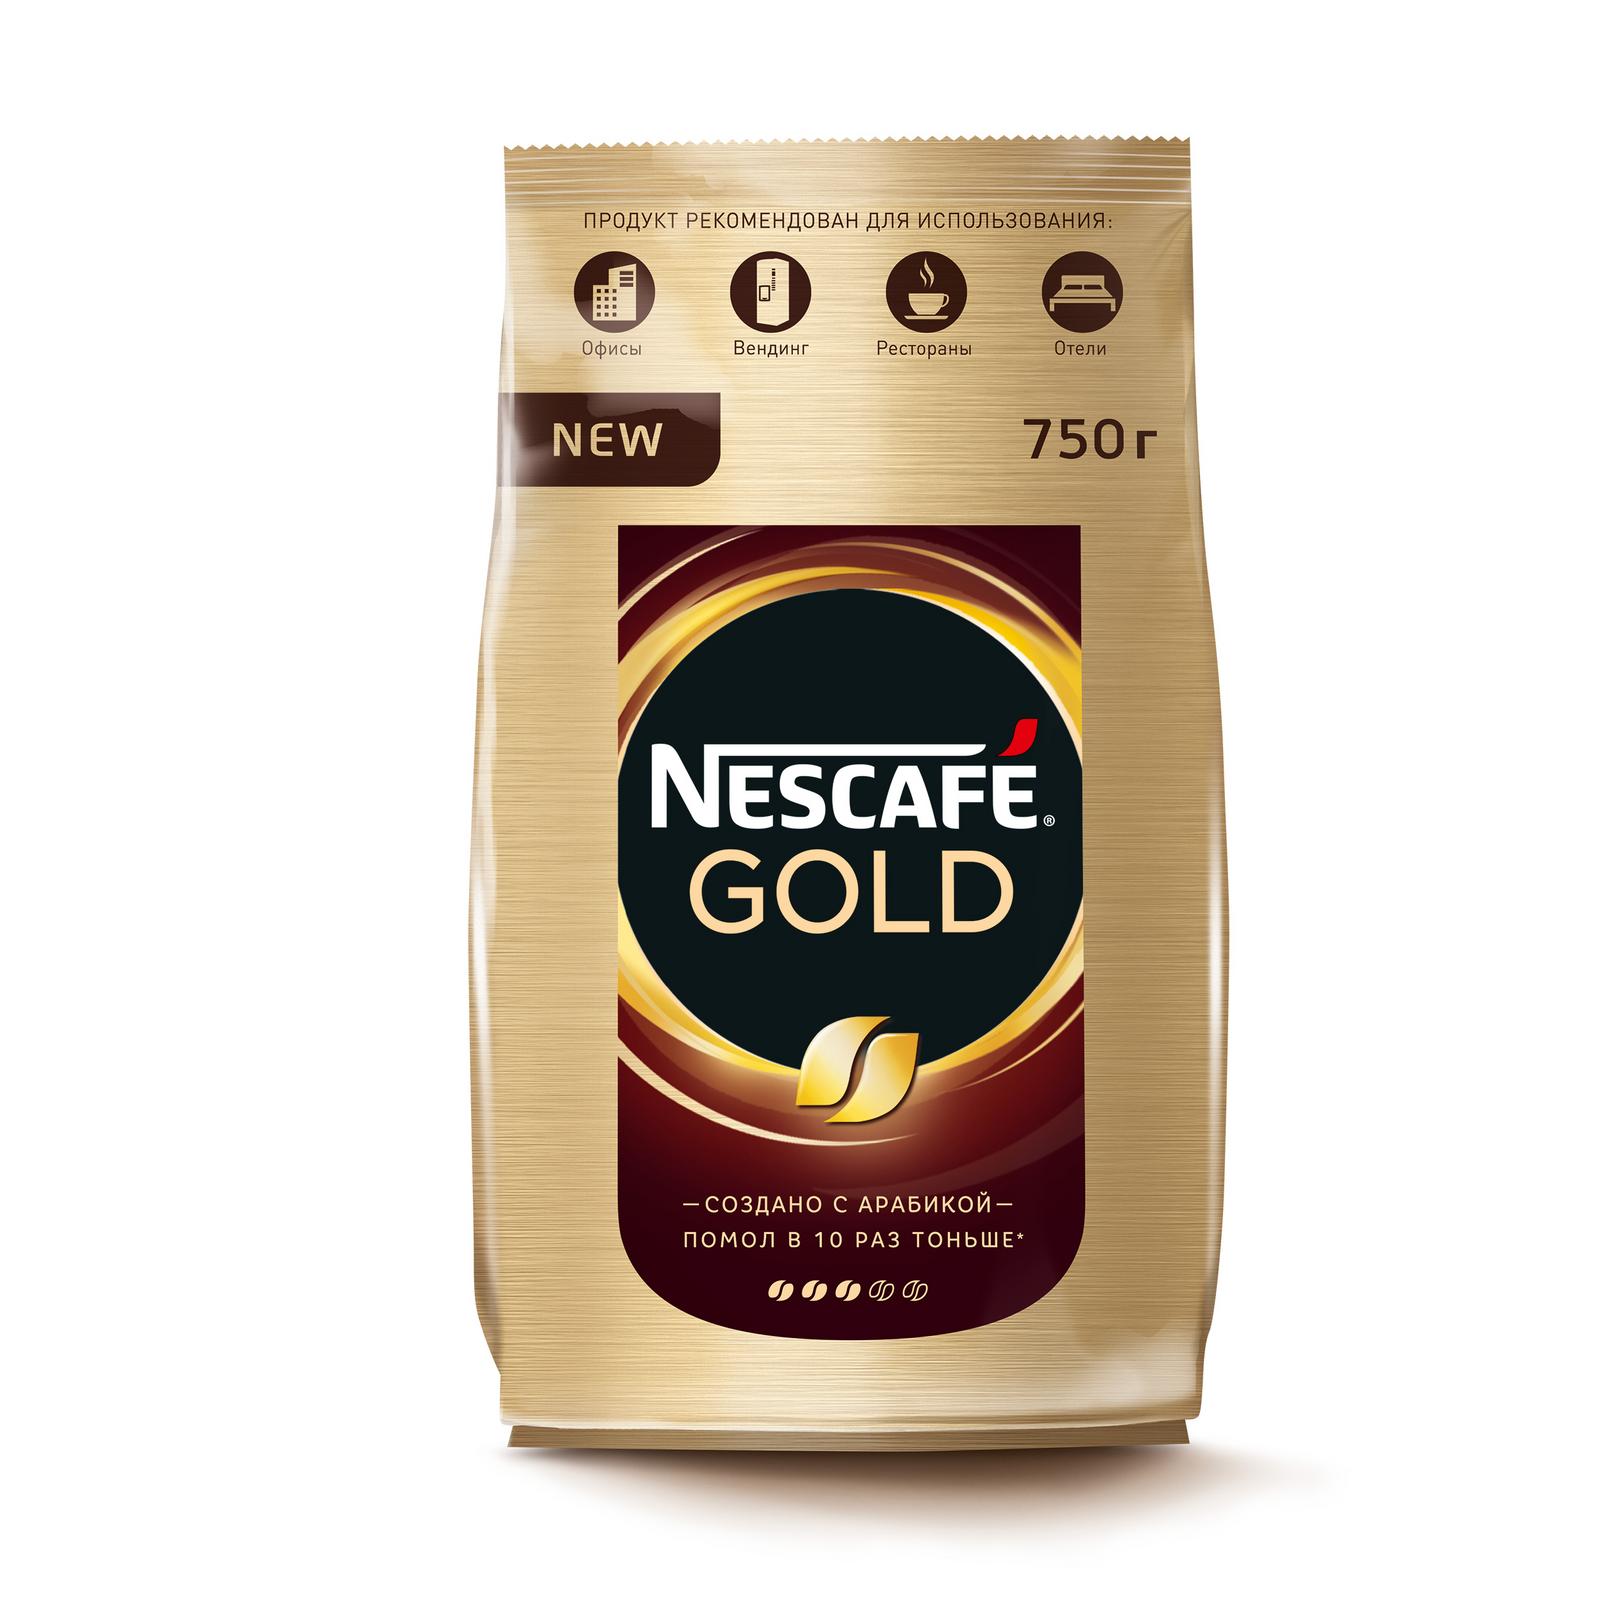 Кофе gold купить. Nescafe кофе Gold 900г.. Кофе Нескафе Голд 750г. Кофе растворимый Nescafe Gold 900 гр. Кофе Нескафе Голд 750 гр.